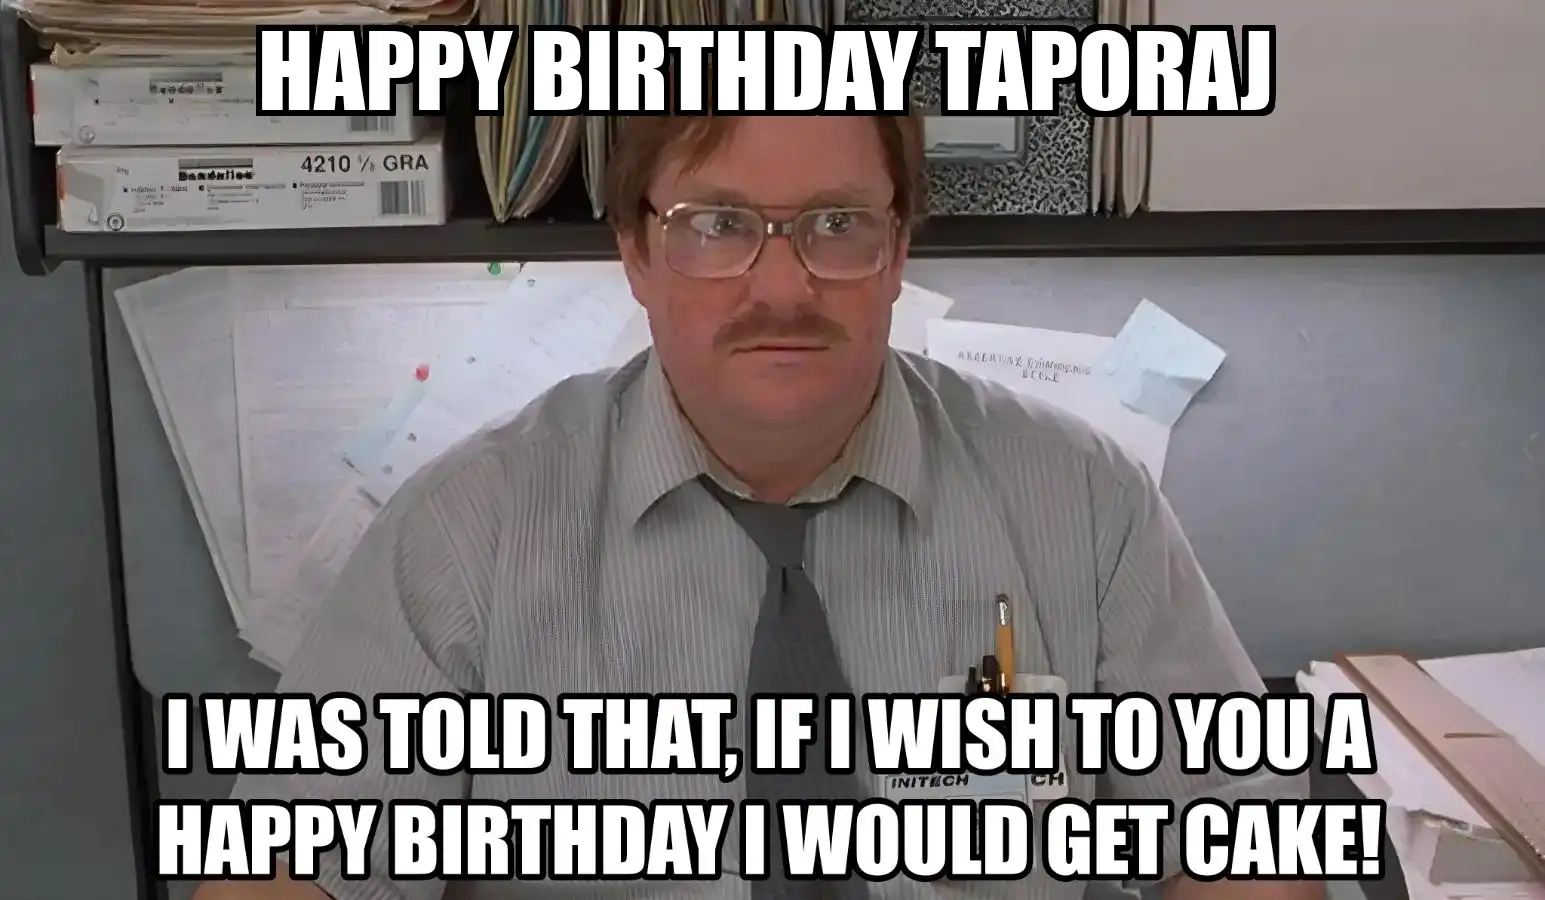 Happy Birthday Taporaj I Would Get A Cake Meme